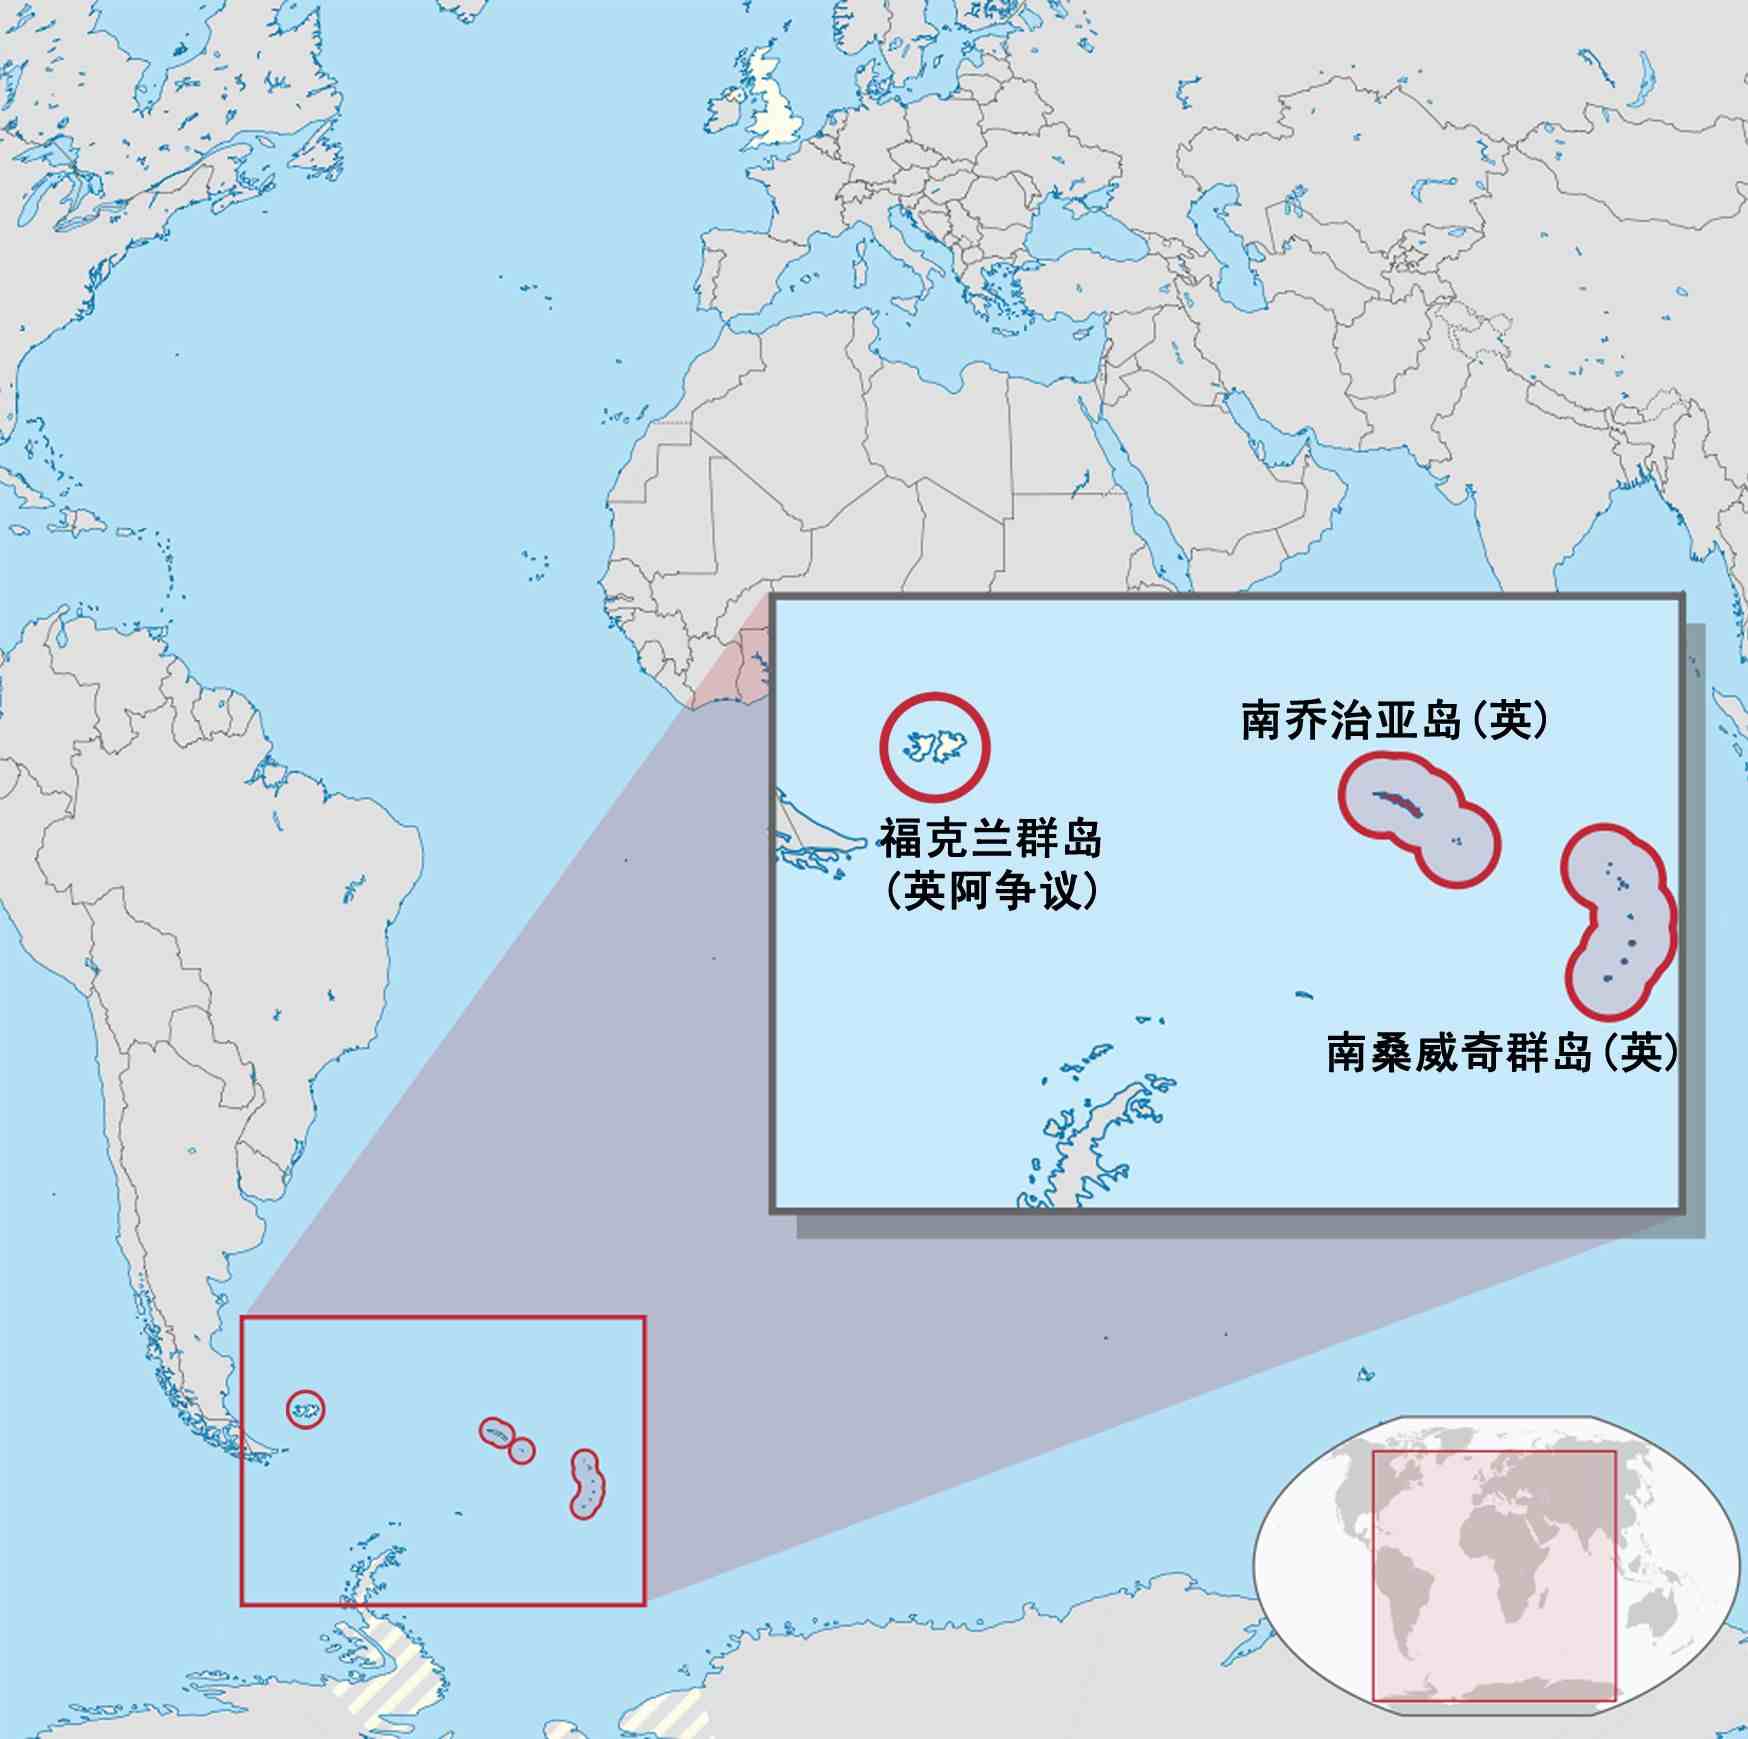 马尔维纳斯群岛到底是谁的？英国和阿根廷，谁的理由更充分？